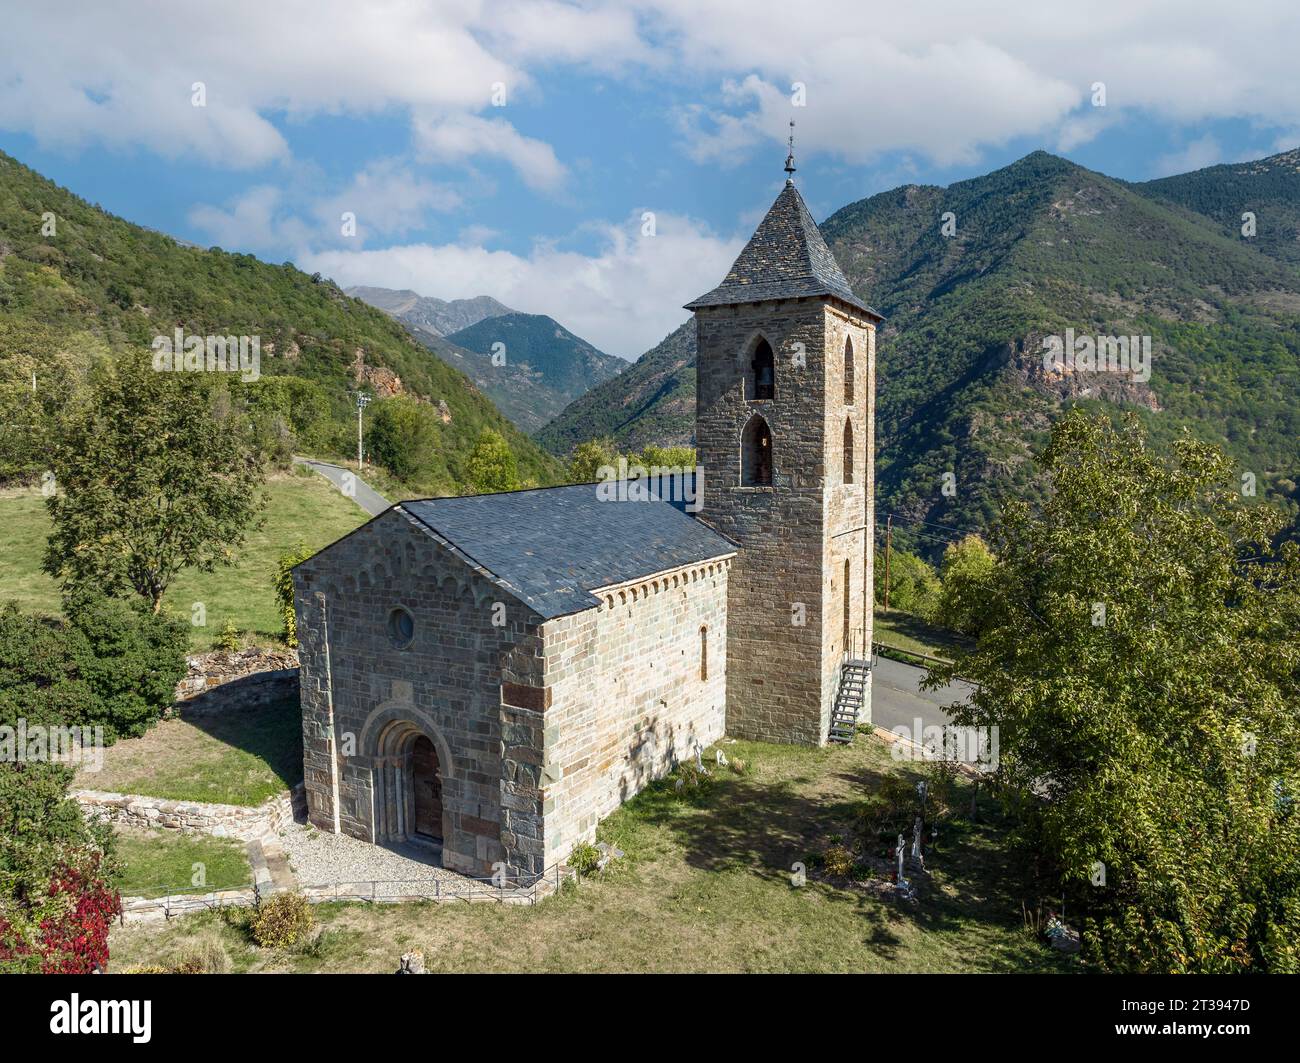 Église romaine de Santa Maria de la Asuncion à Coll, Catalogne Espagne. C'est l'une des neuf églises qui appartiennent au site du patrimoine mondial de l'UNESCO. Banque D'Images